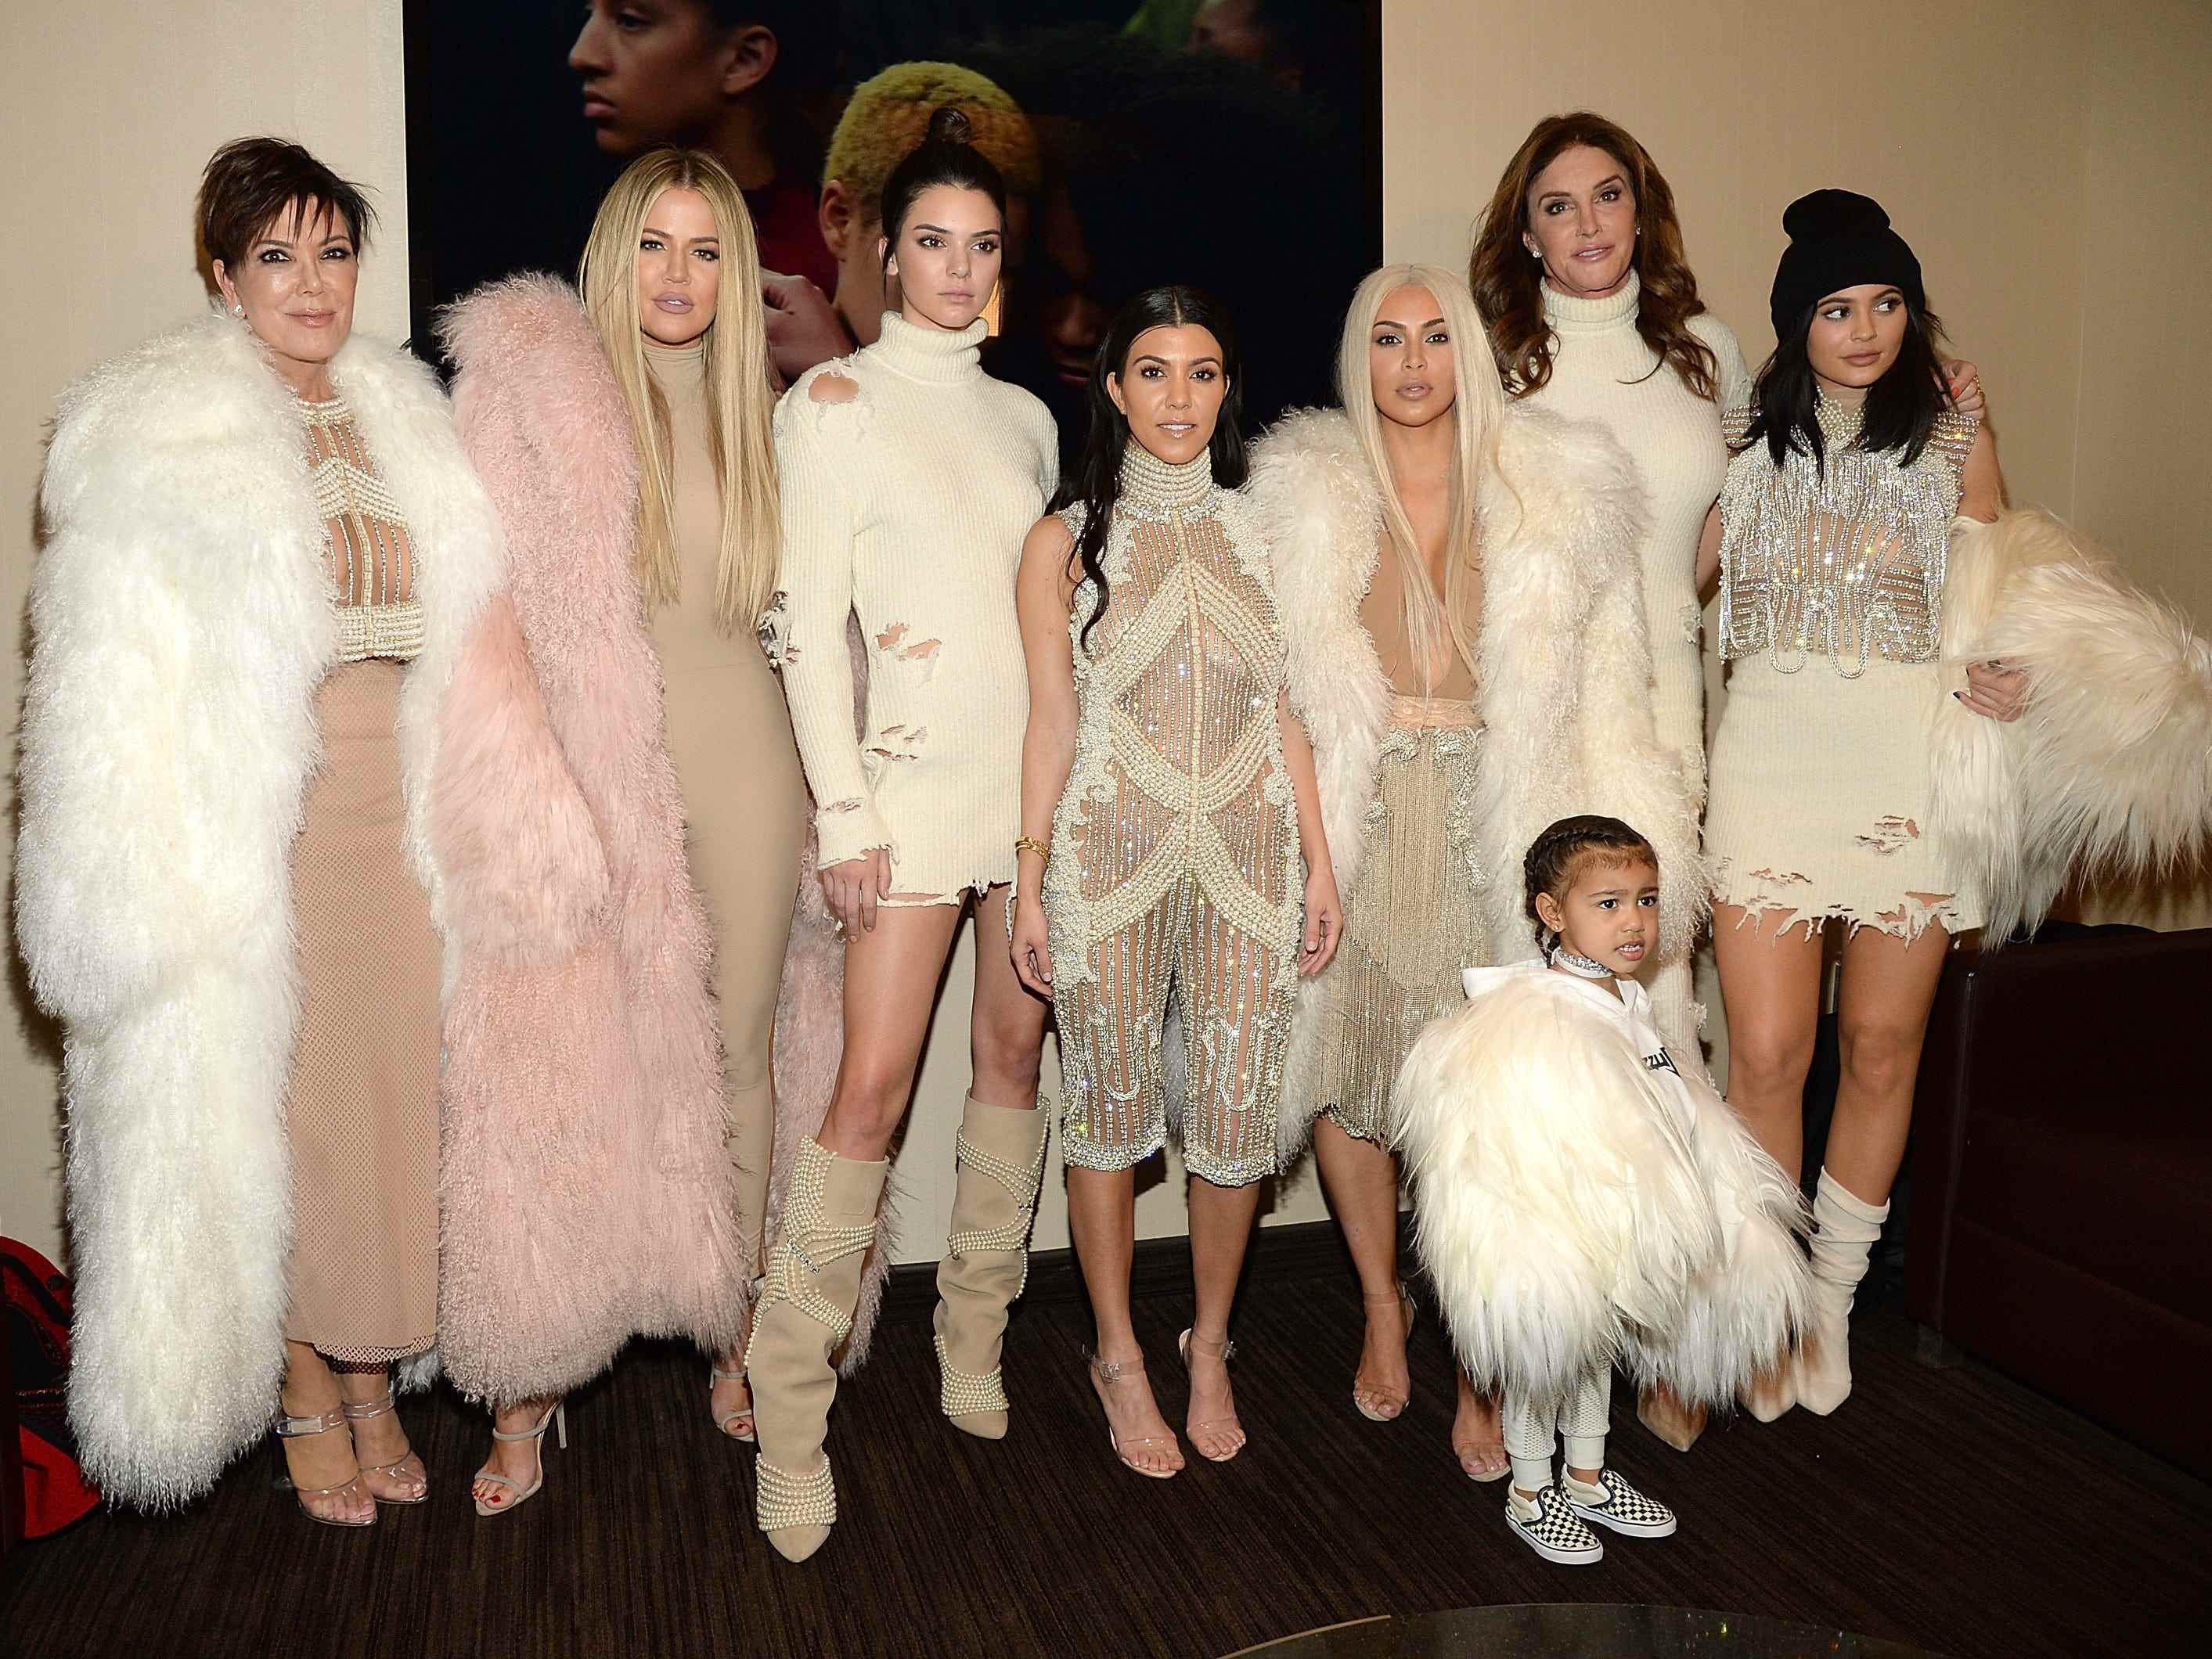 Kris Jenner, Khloe Kardashian, Kendall Jenner, Kourtney Kardashian, Kim Kardashian, Caitlyn Jenner, Kylie Jenner und North West trugen Ensembles in Weiß, Creme, Rouge und Kristall.